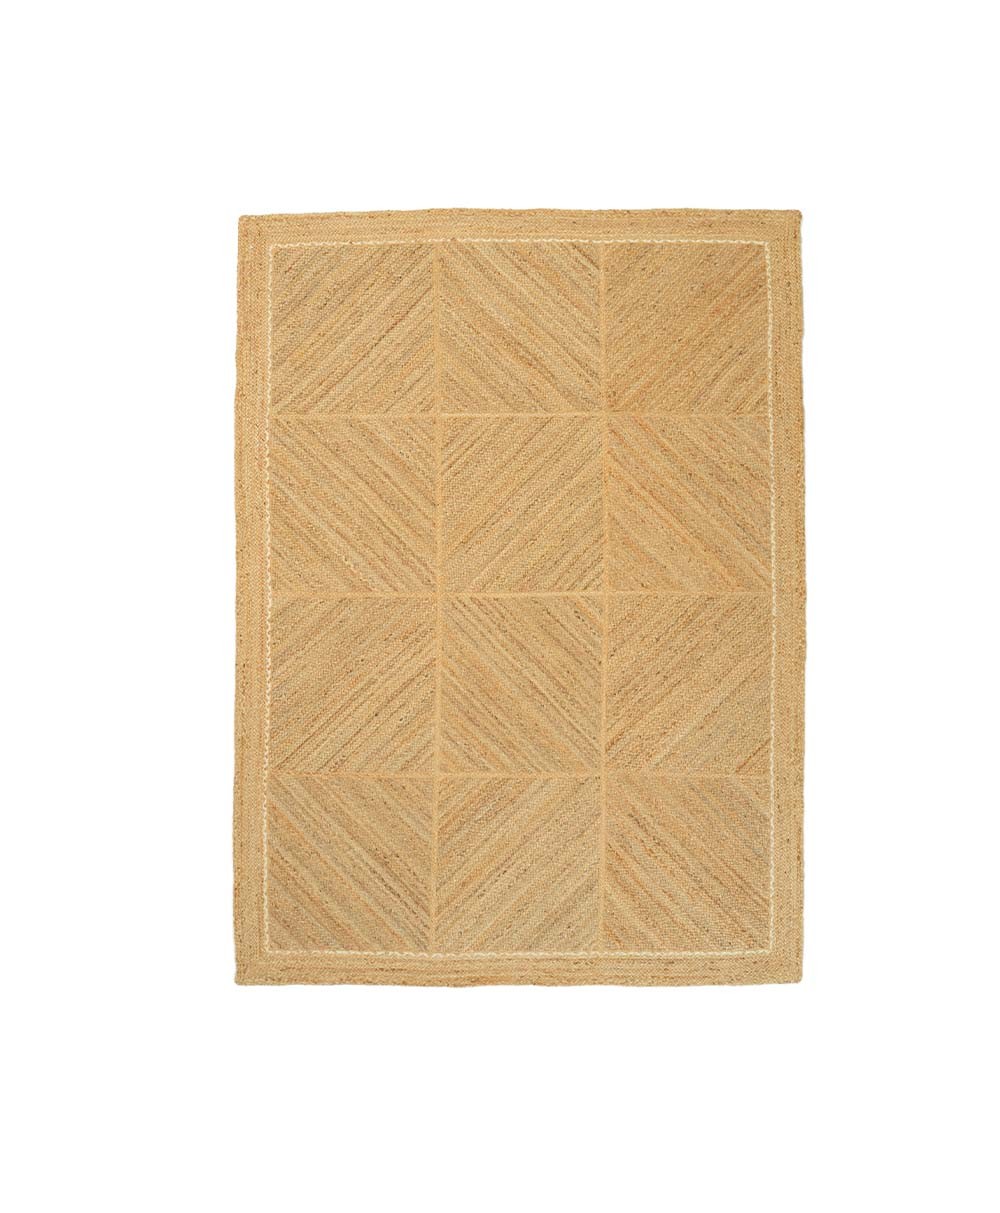 Hier abgebildet ein Produktbild von dem Teppich Coyoacan von der Élitis Kollektion 2024 - RAUM concept store